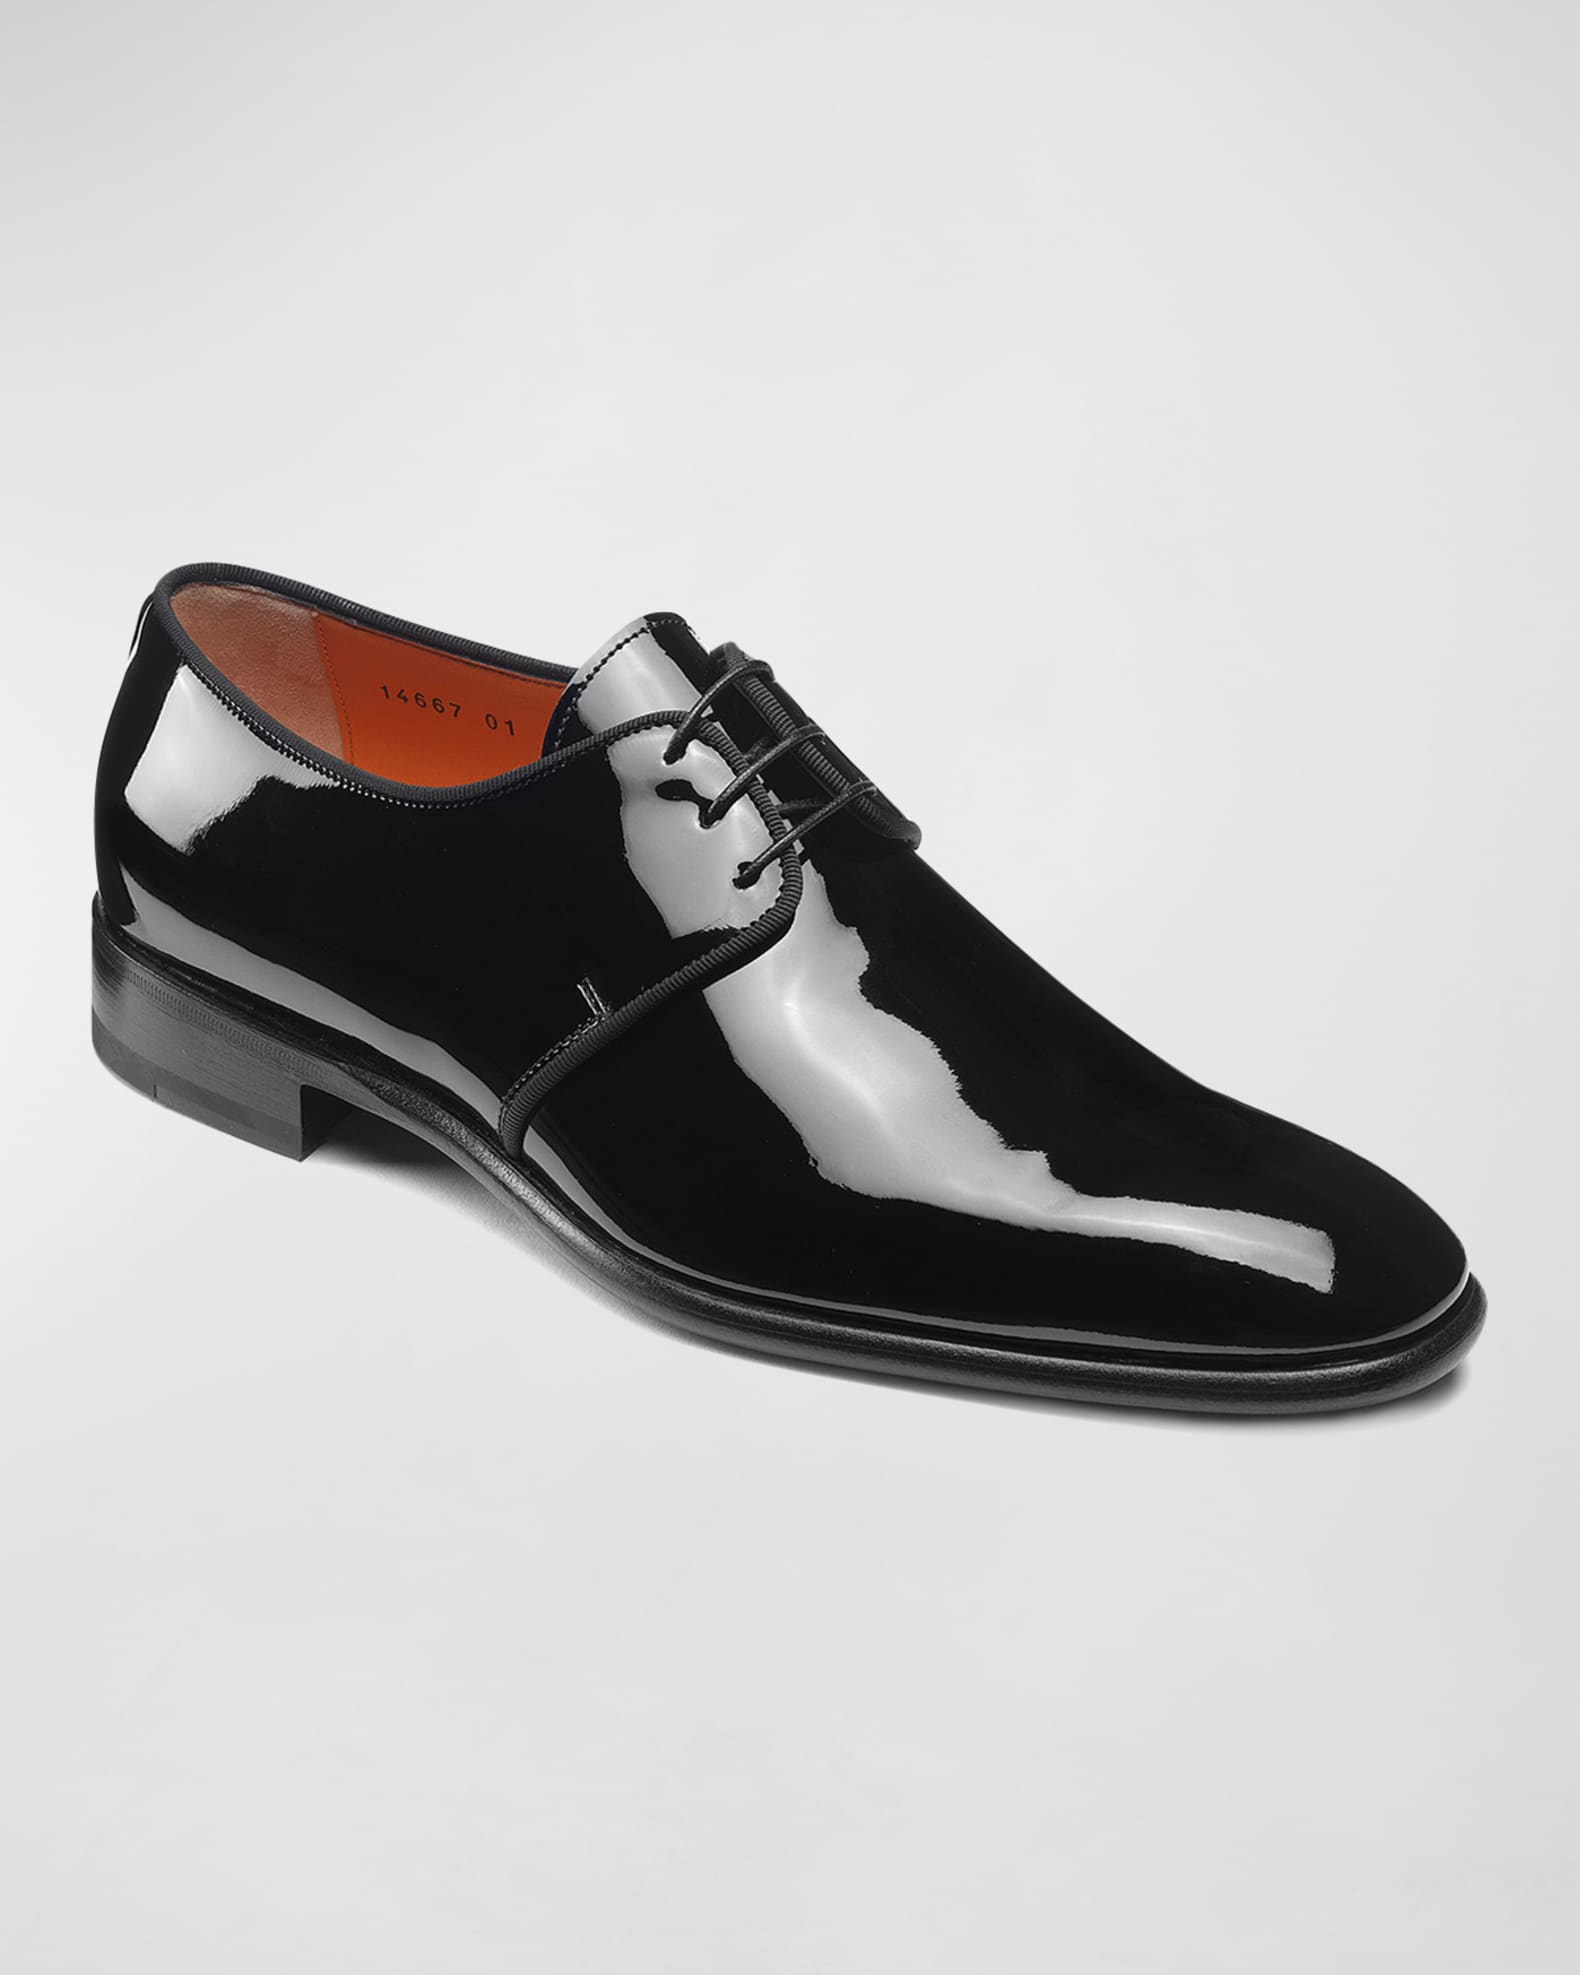 Santoni Men's Isogram Patent Leather Derby Shoes | Neiman Marcus